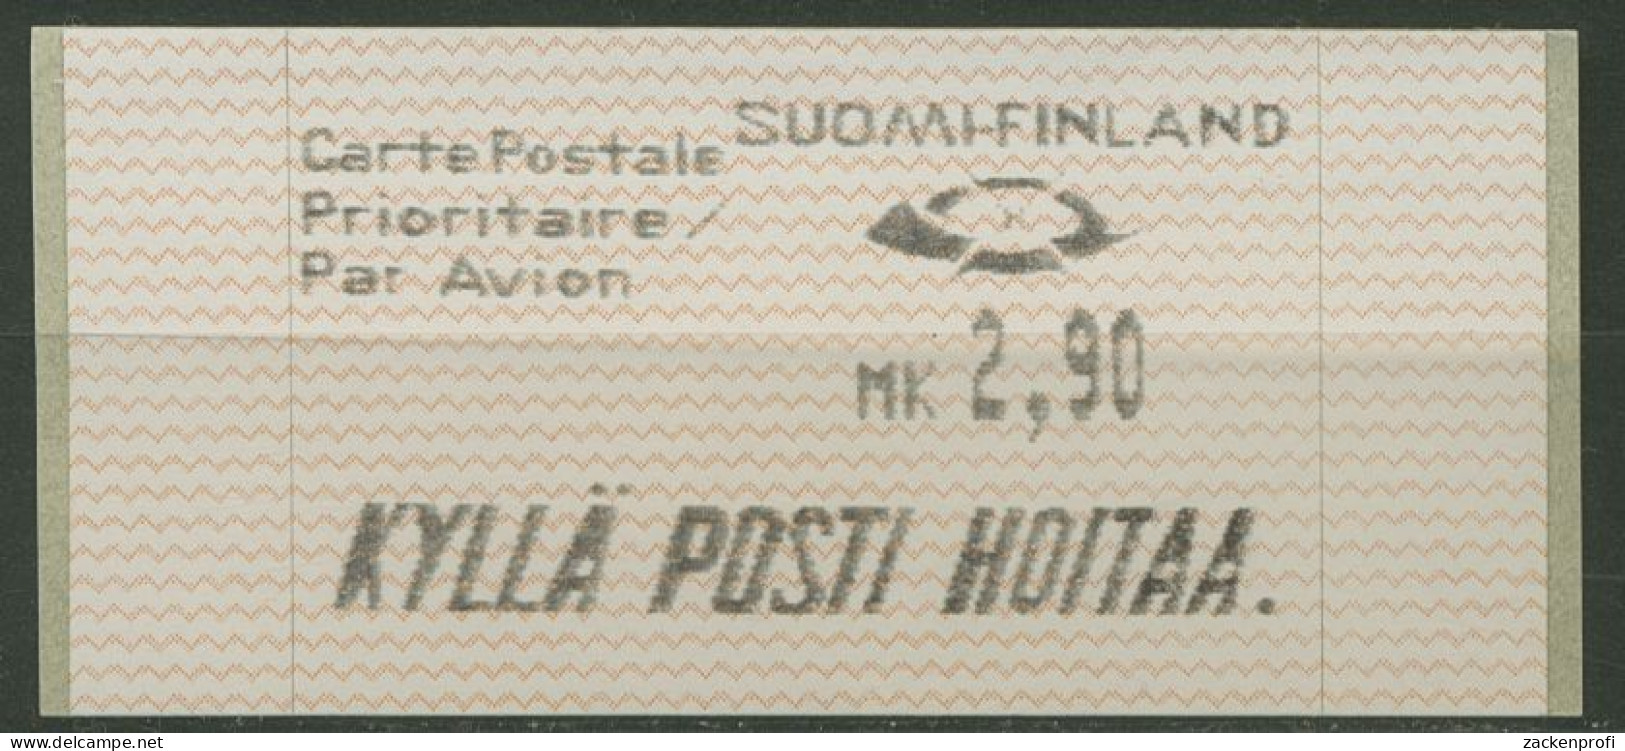 Finnland Automatenmarken 1991 MK 2,90 Einzelwert, ATM 10.1 Z3 Postfrisch - Timbres De Distributeurs [ATM]